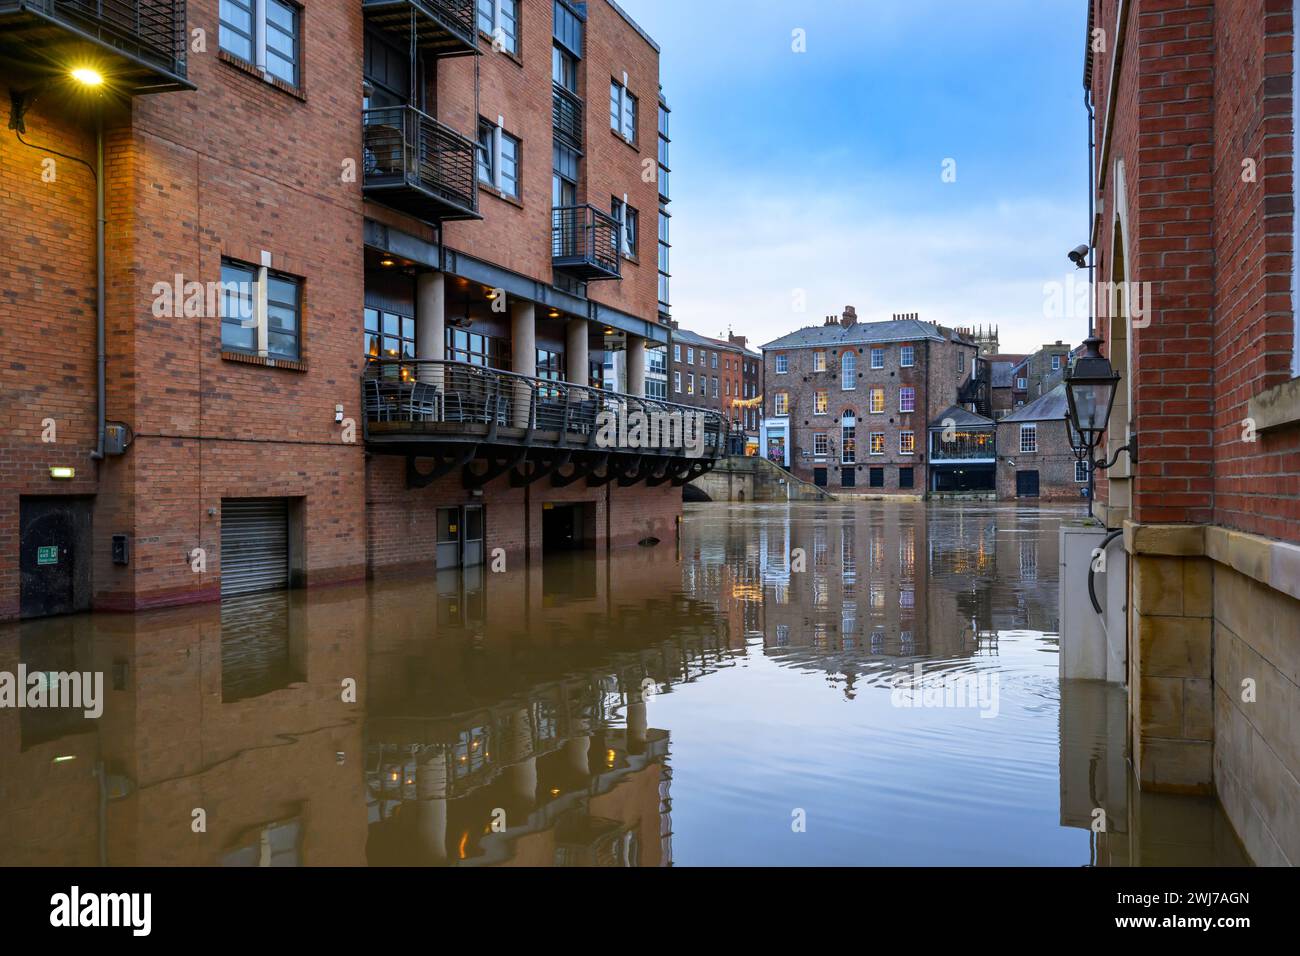 Río Ouse estalló sus orillas después de fuertes lluvias (junto al río sumergido bajo altas inundaciones, locales de pub inundados) - York, North Yorkshire, Inglaterra, Reino Unido. Foto de stock